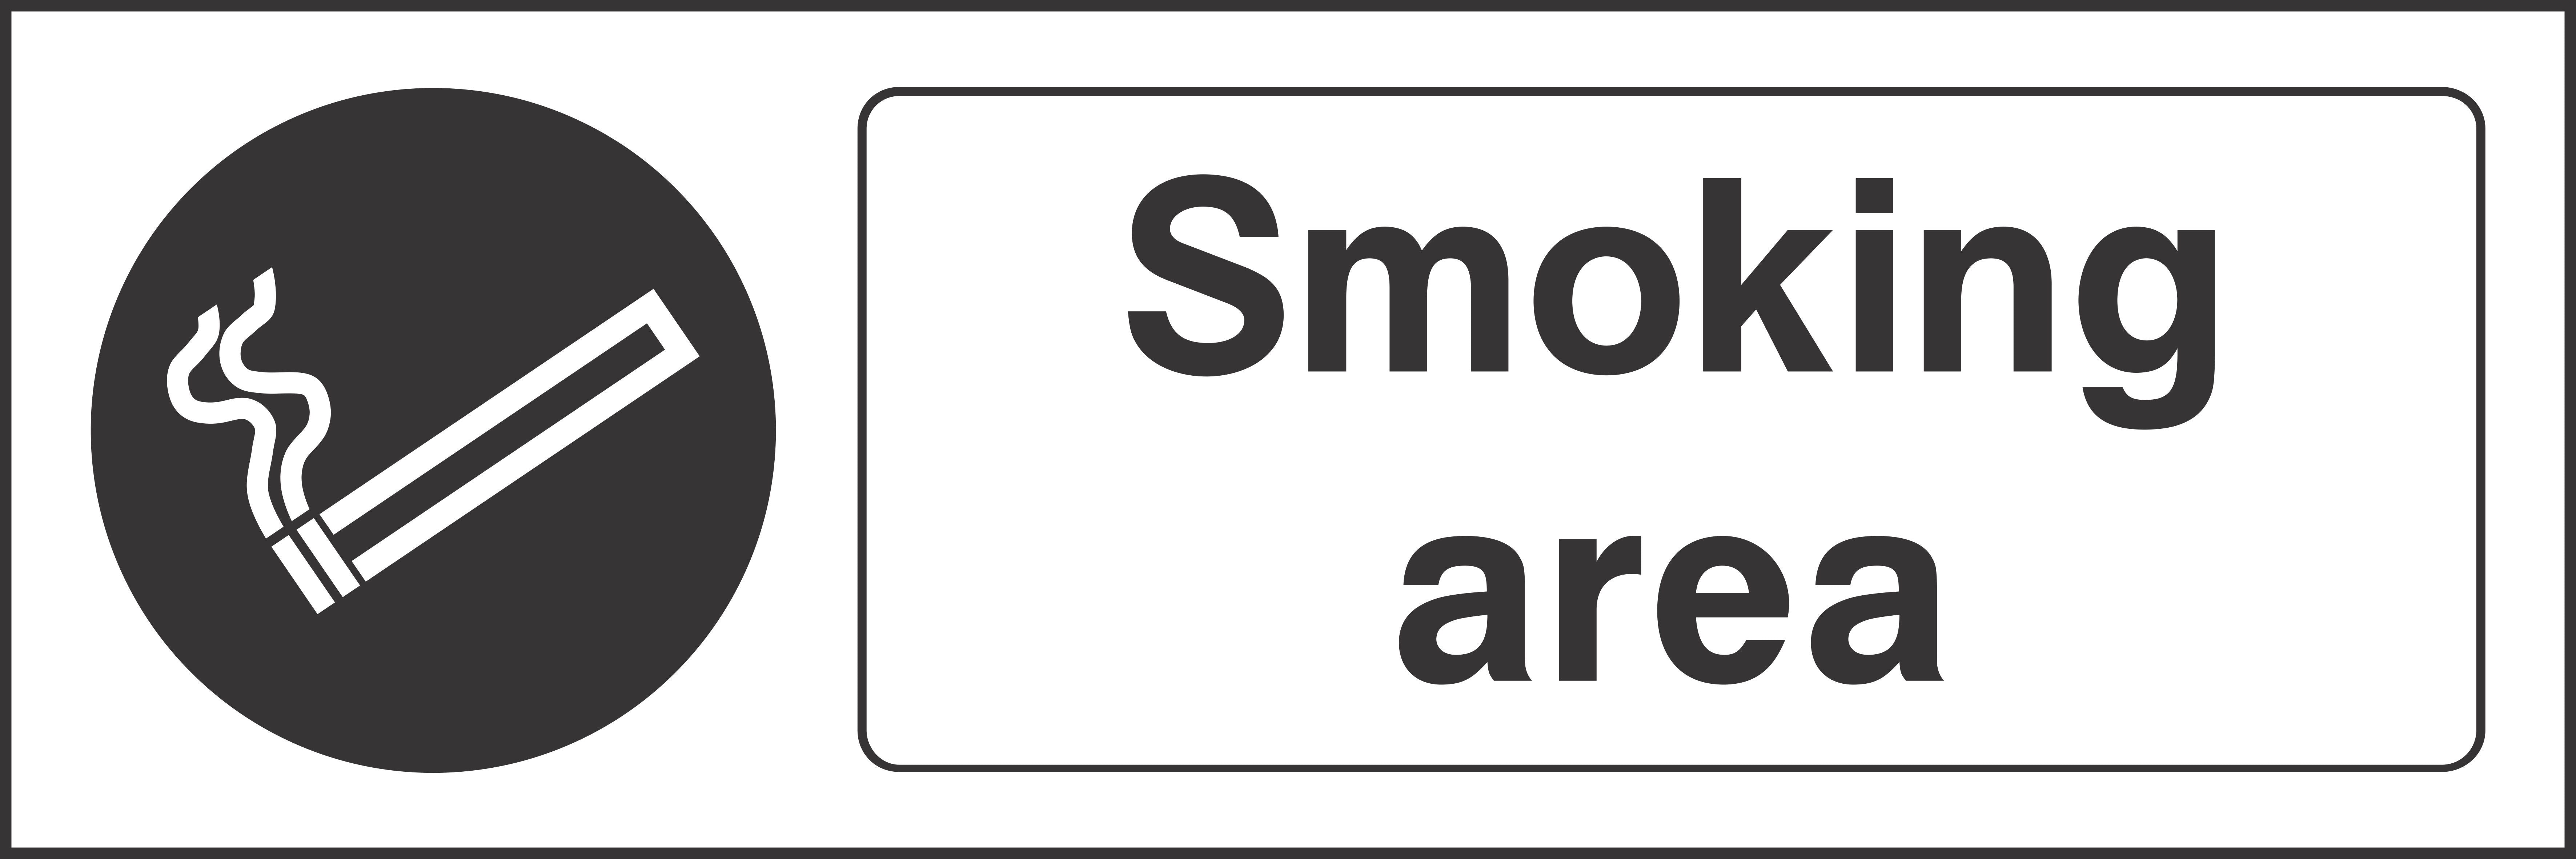 Smoking area Sign